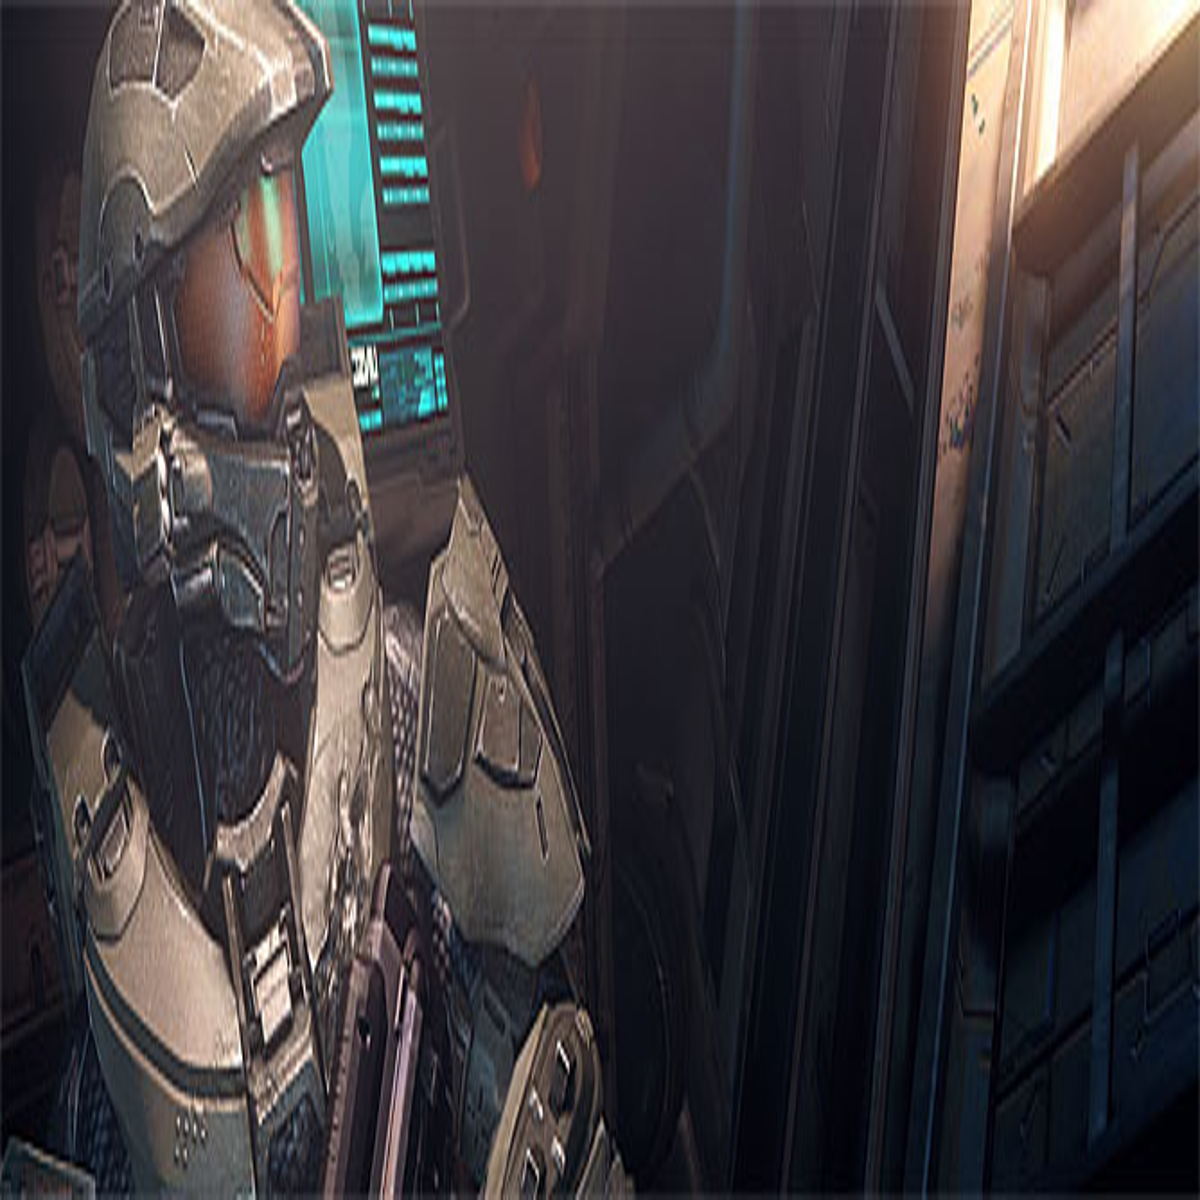 Halo 4: Spartan Ops se passará seis meses após a campanha